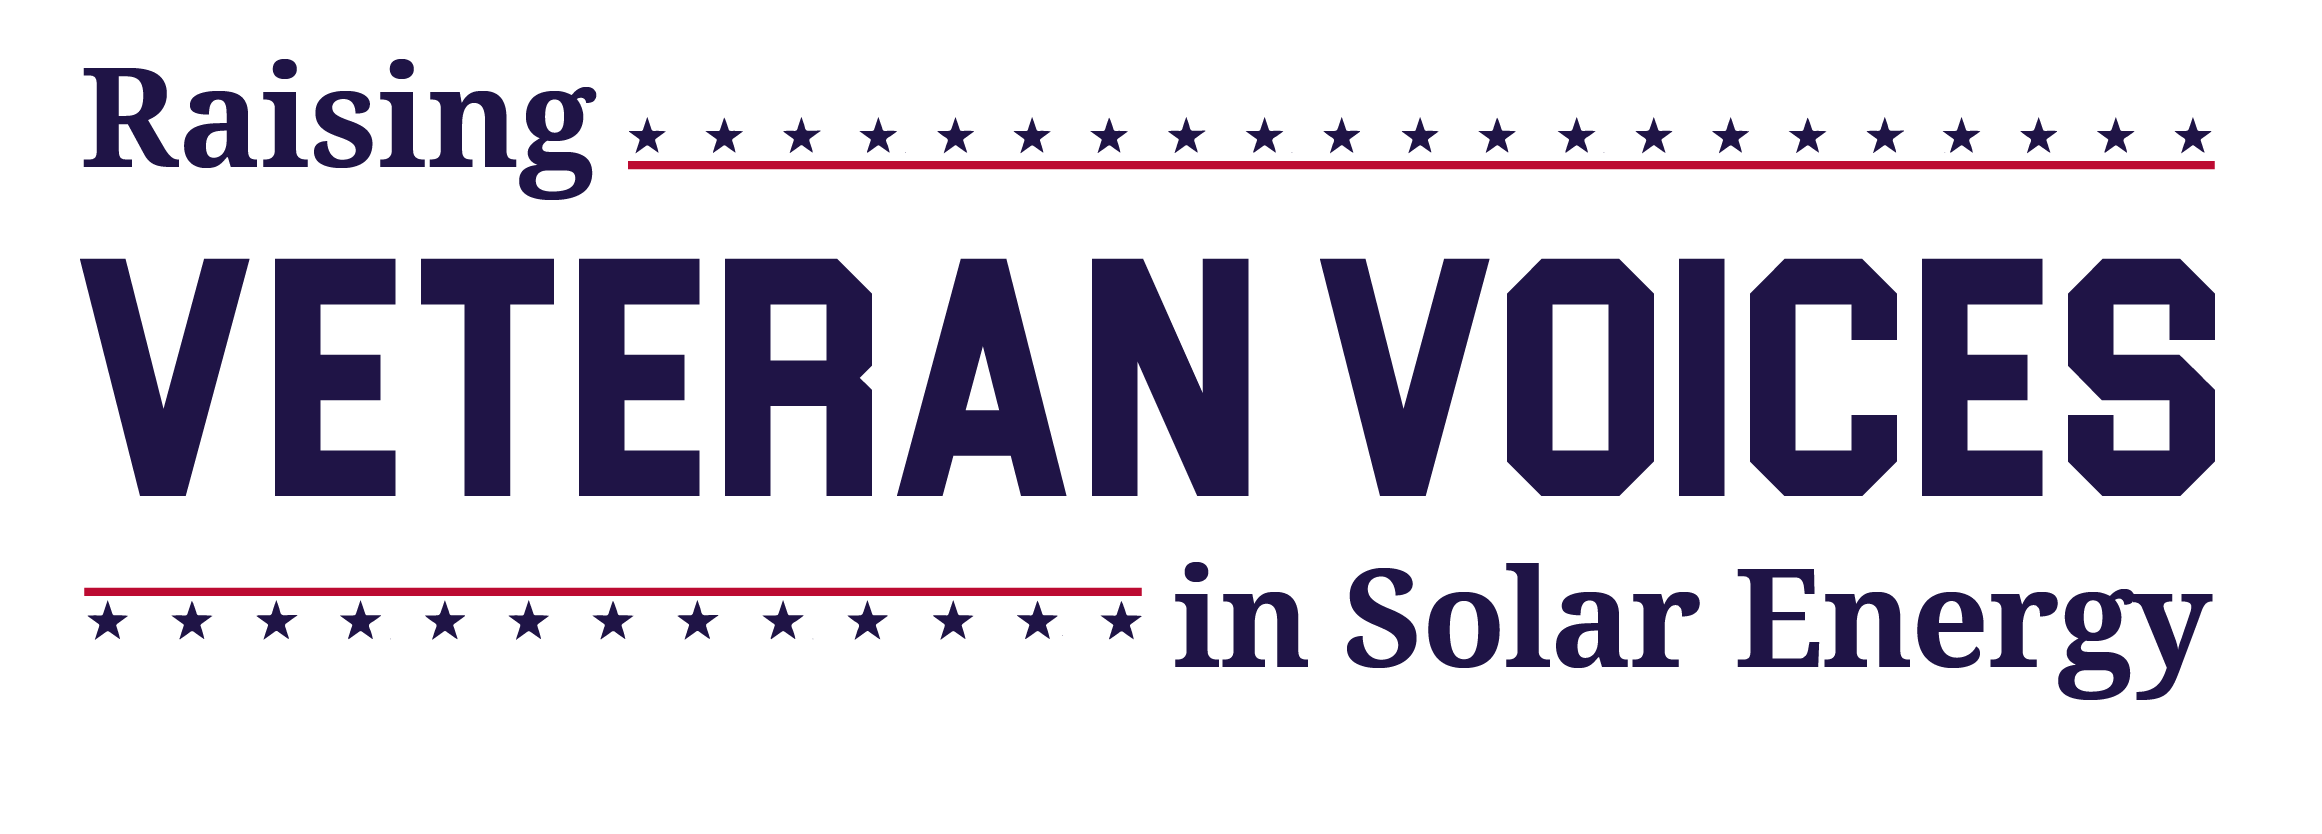 raising veteran voices in solar energy